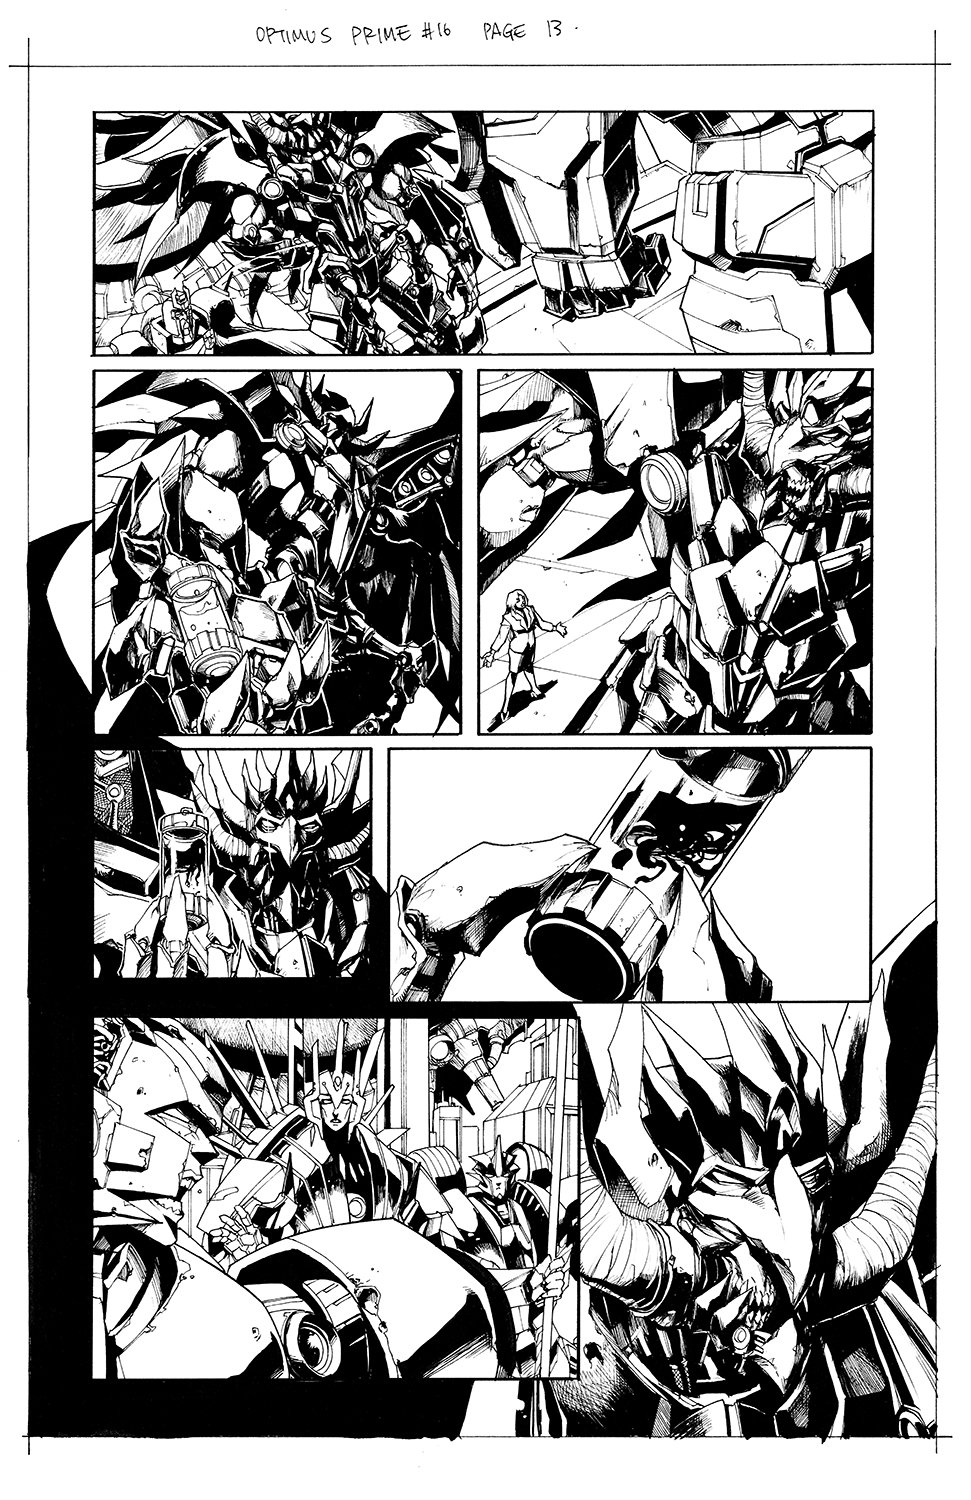 Optimus Prime #16 Page 13